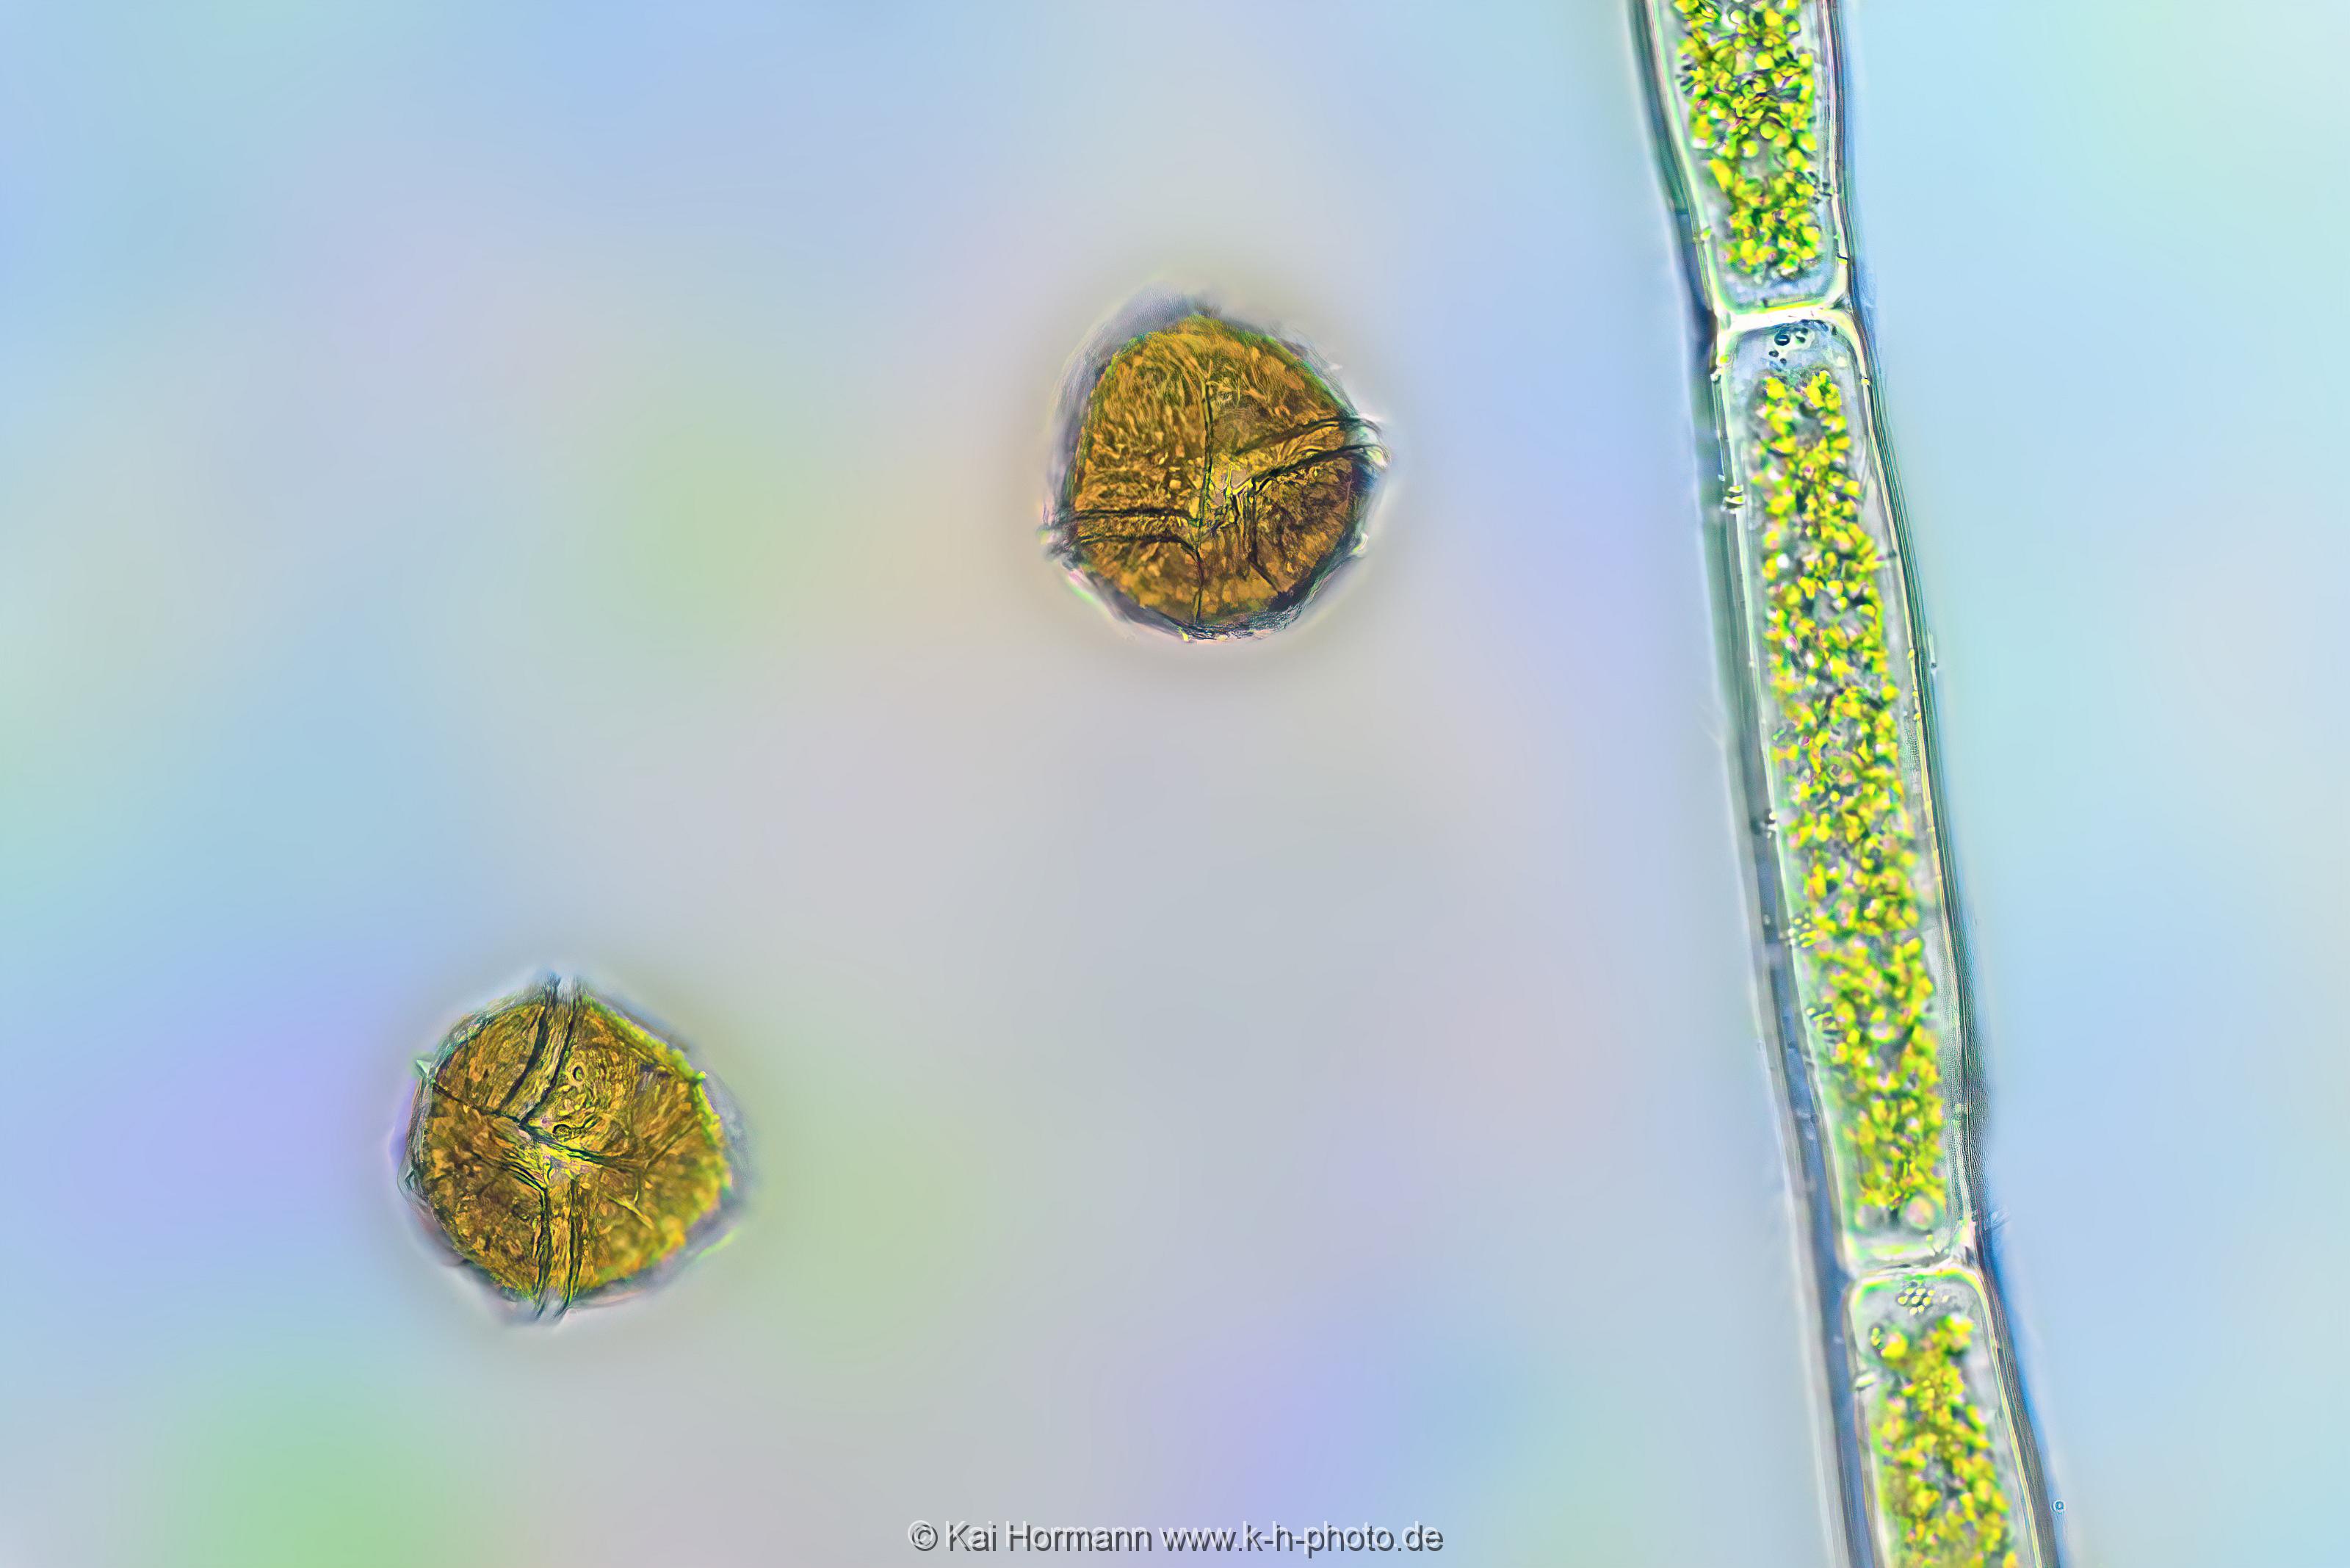 Panzertafelflagellate. Mikrofotografie: Mikroskopische Aufnahmen von Einzellern, Algen und Kleinstlebewesen.